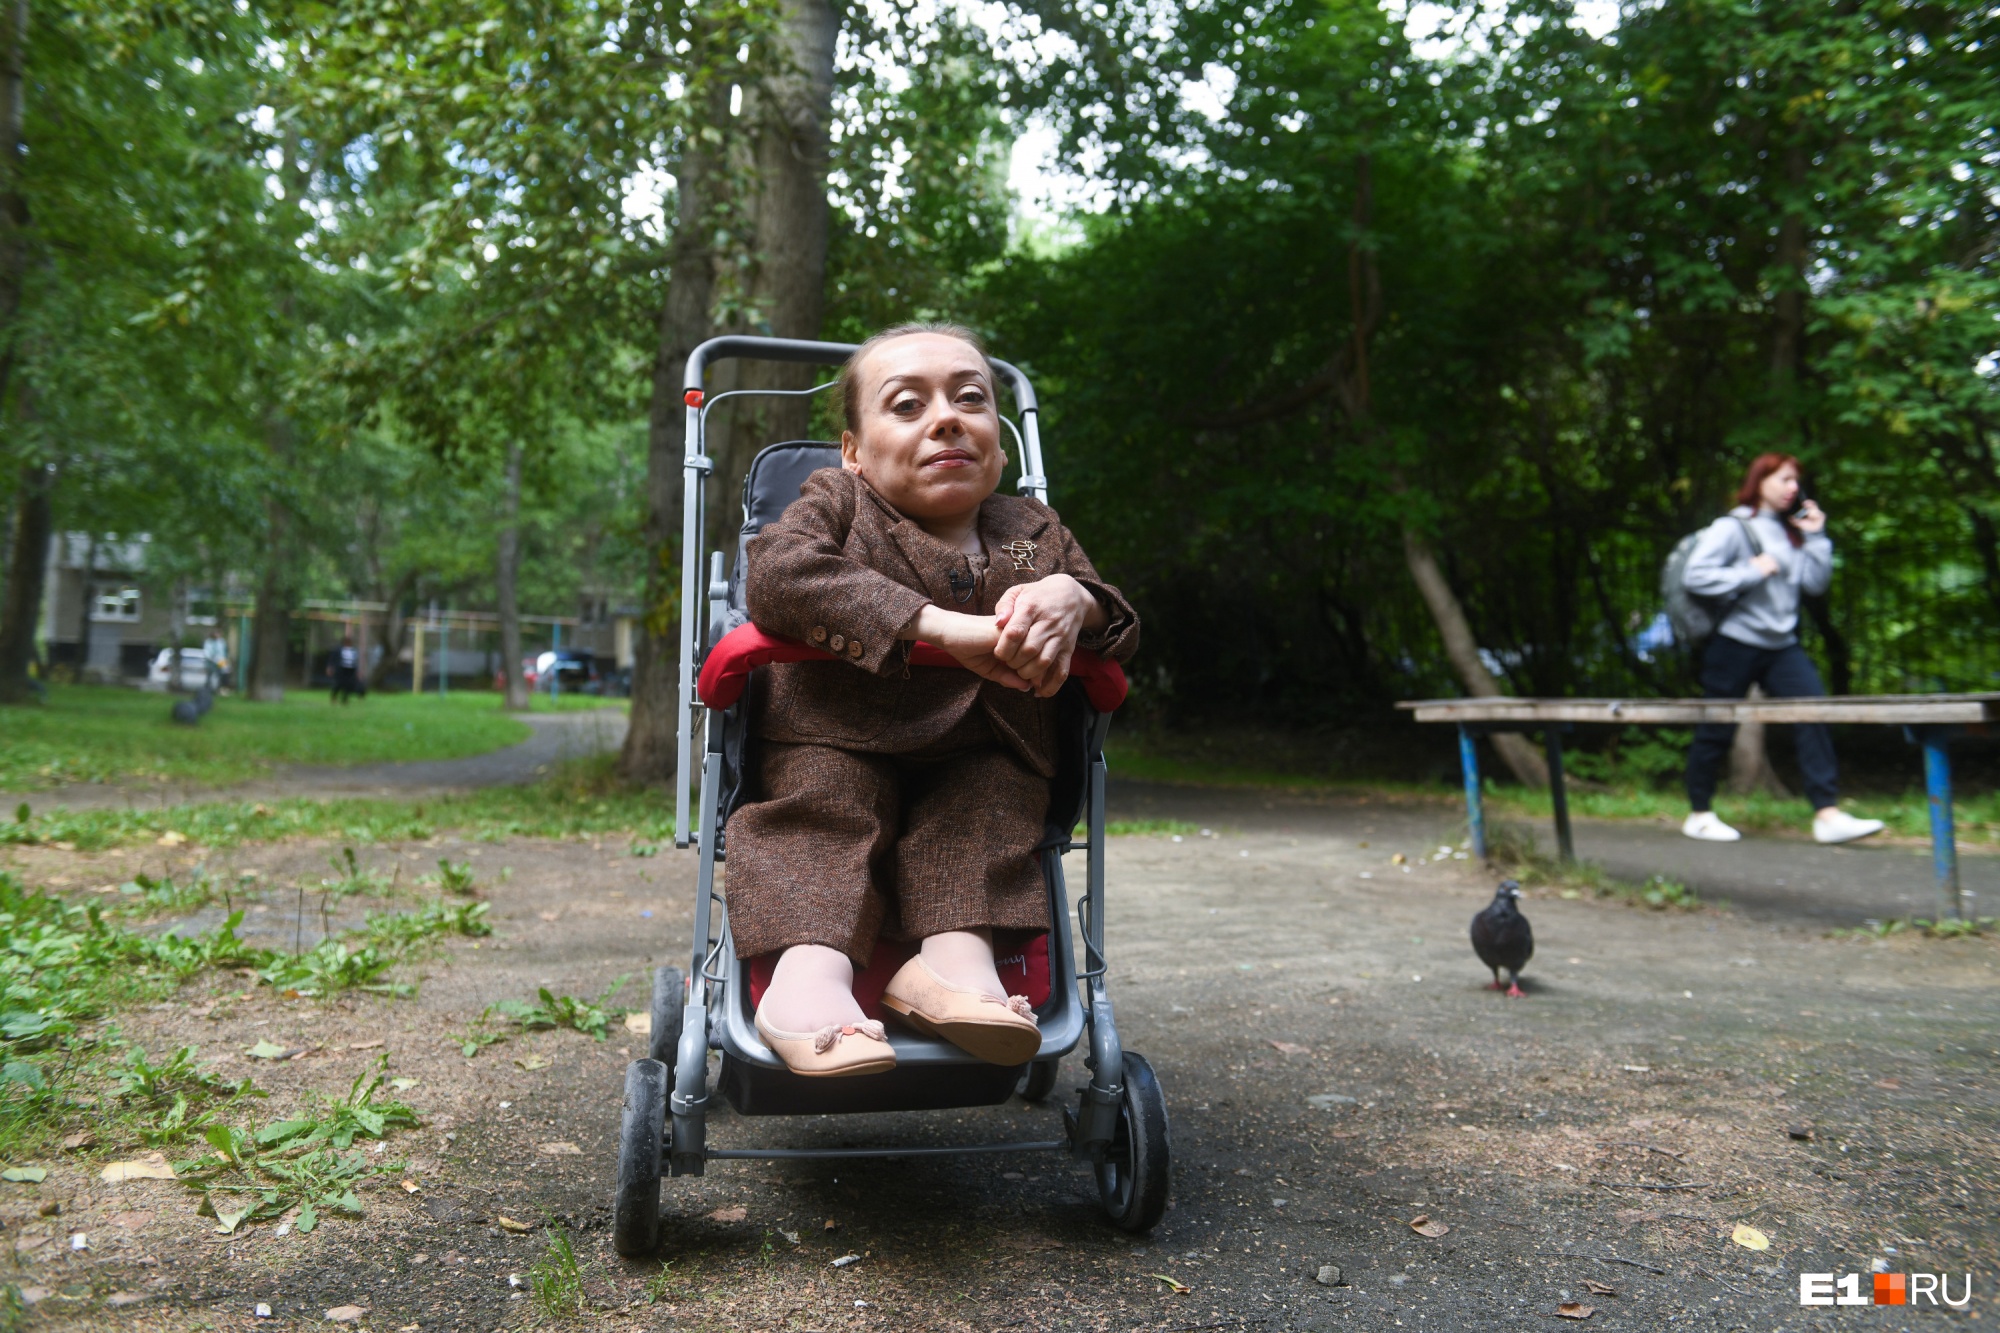 Екатерину возят в детской прогулочной коляске